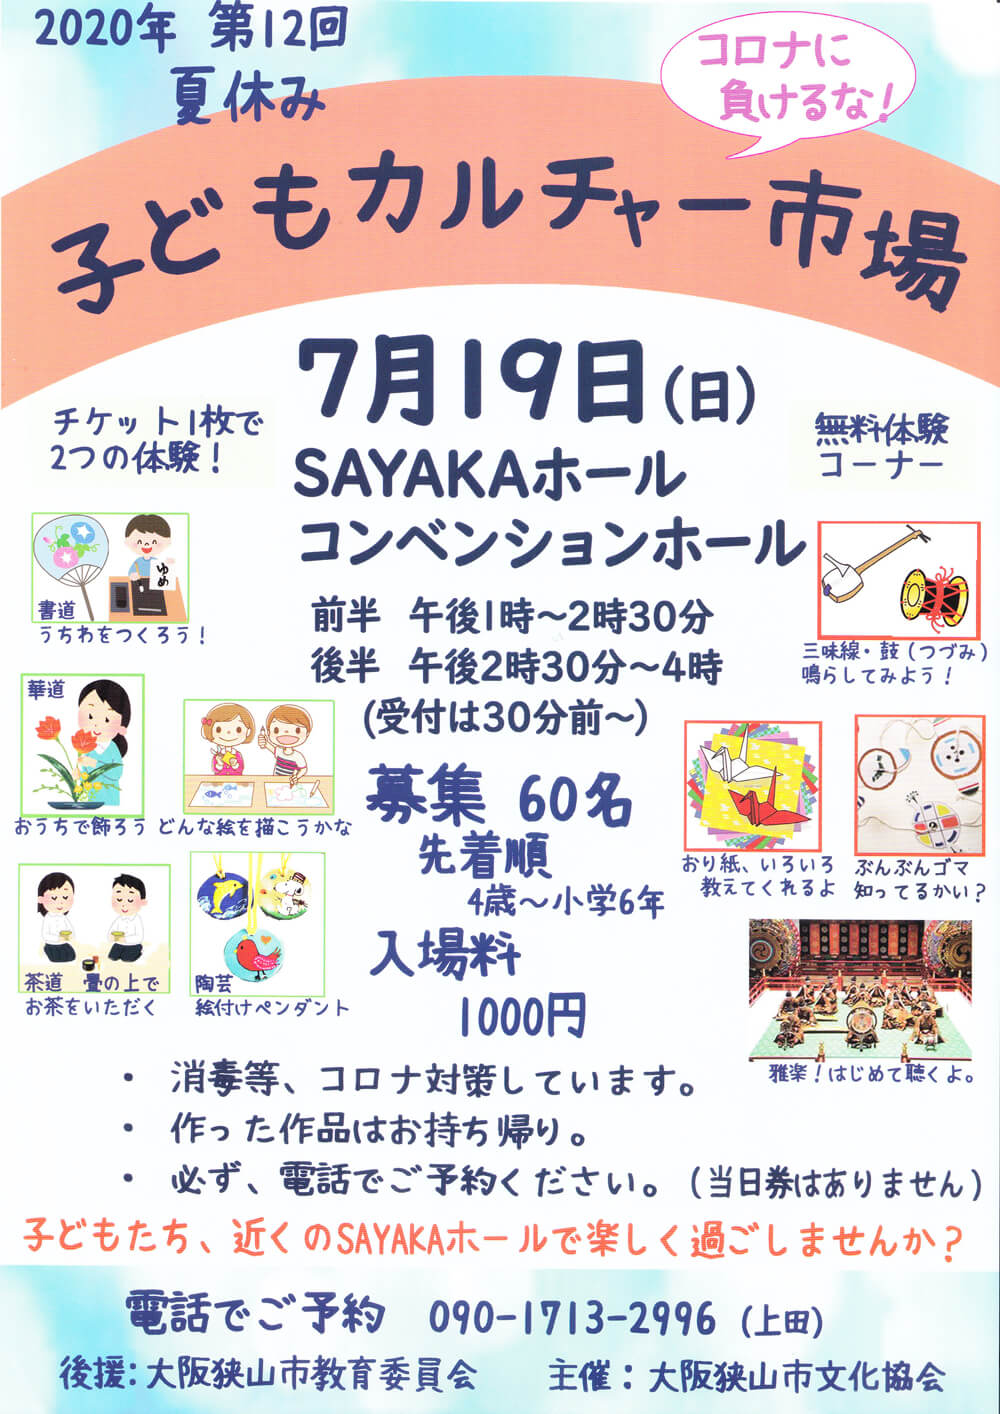 年7月19日 第12回 子どもカルチャー市場 がsayakaホールで開催されます 大阪狭山びこ